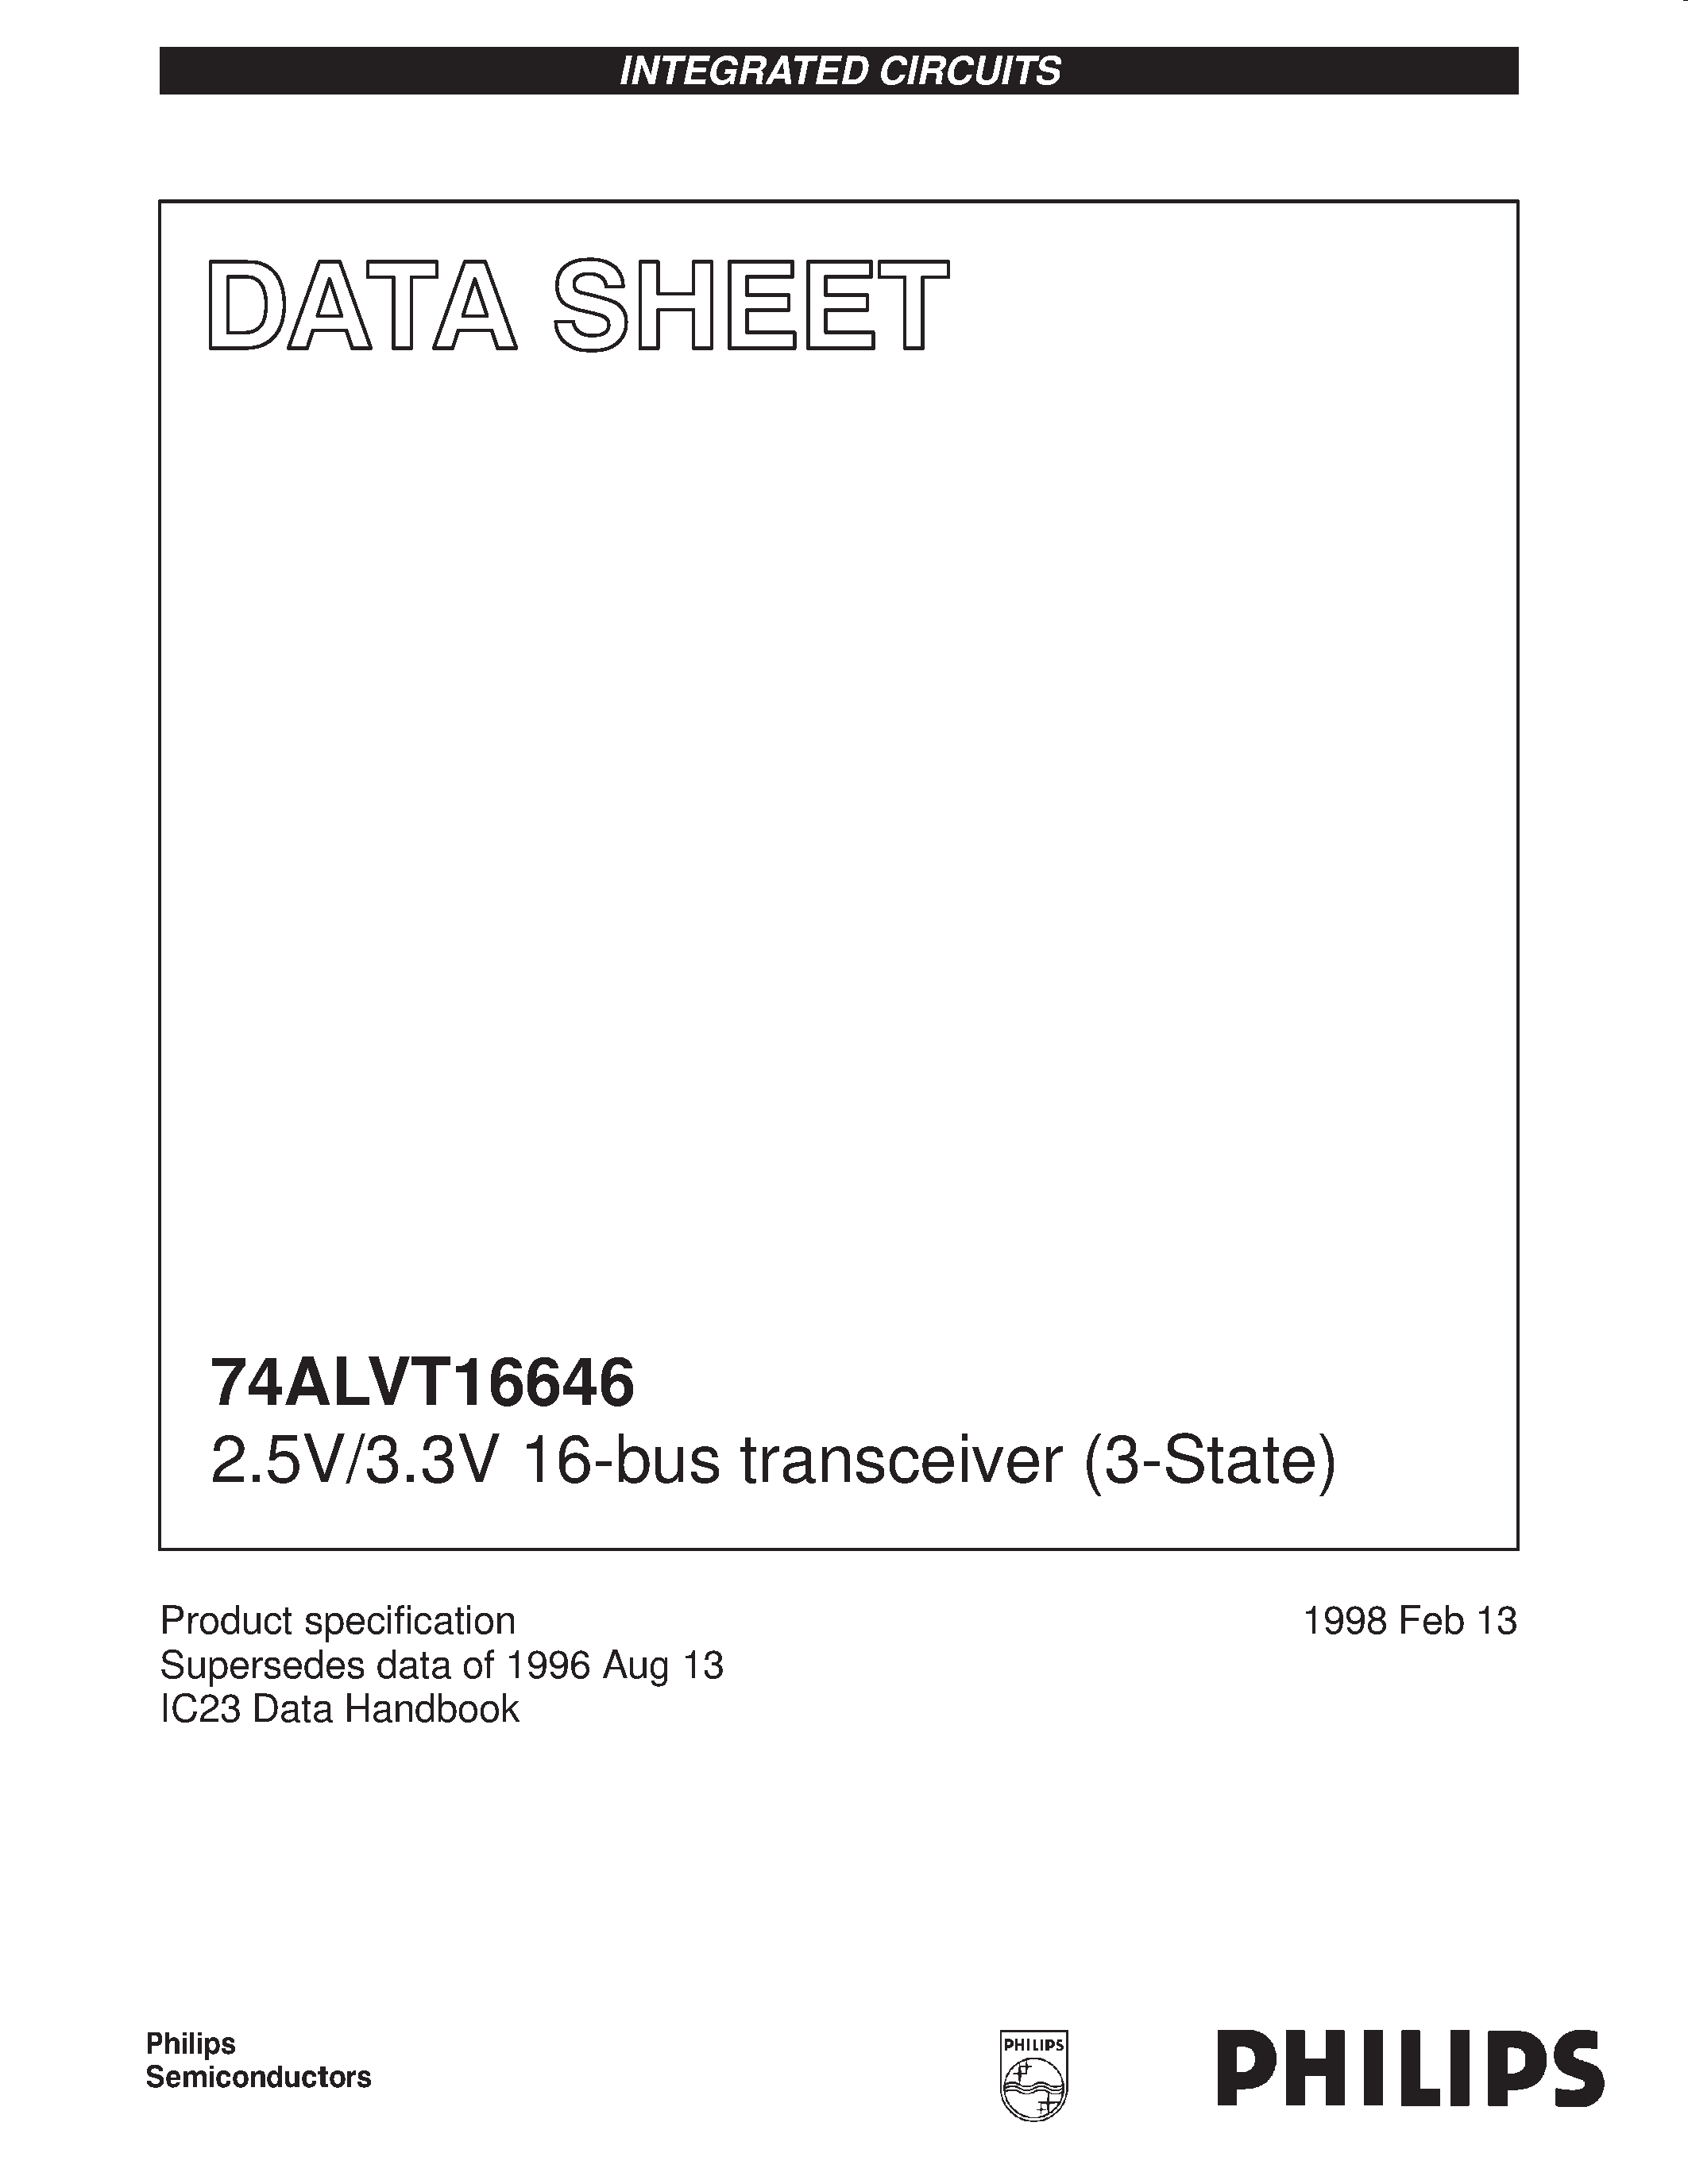 Даташит 74ALVT166646DL - 2.5V/3.3V 16-bus transceiver 3-State страница 1